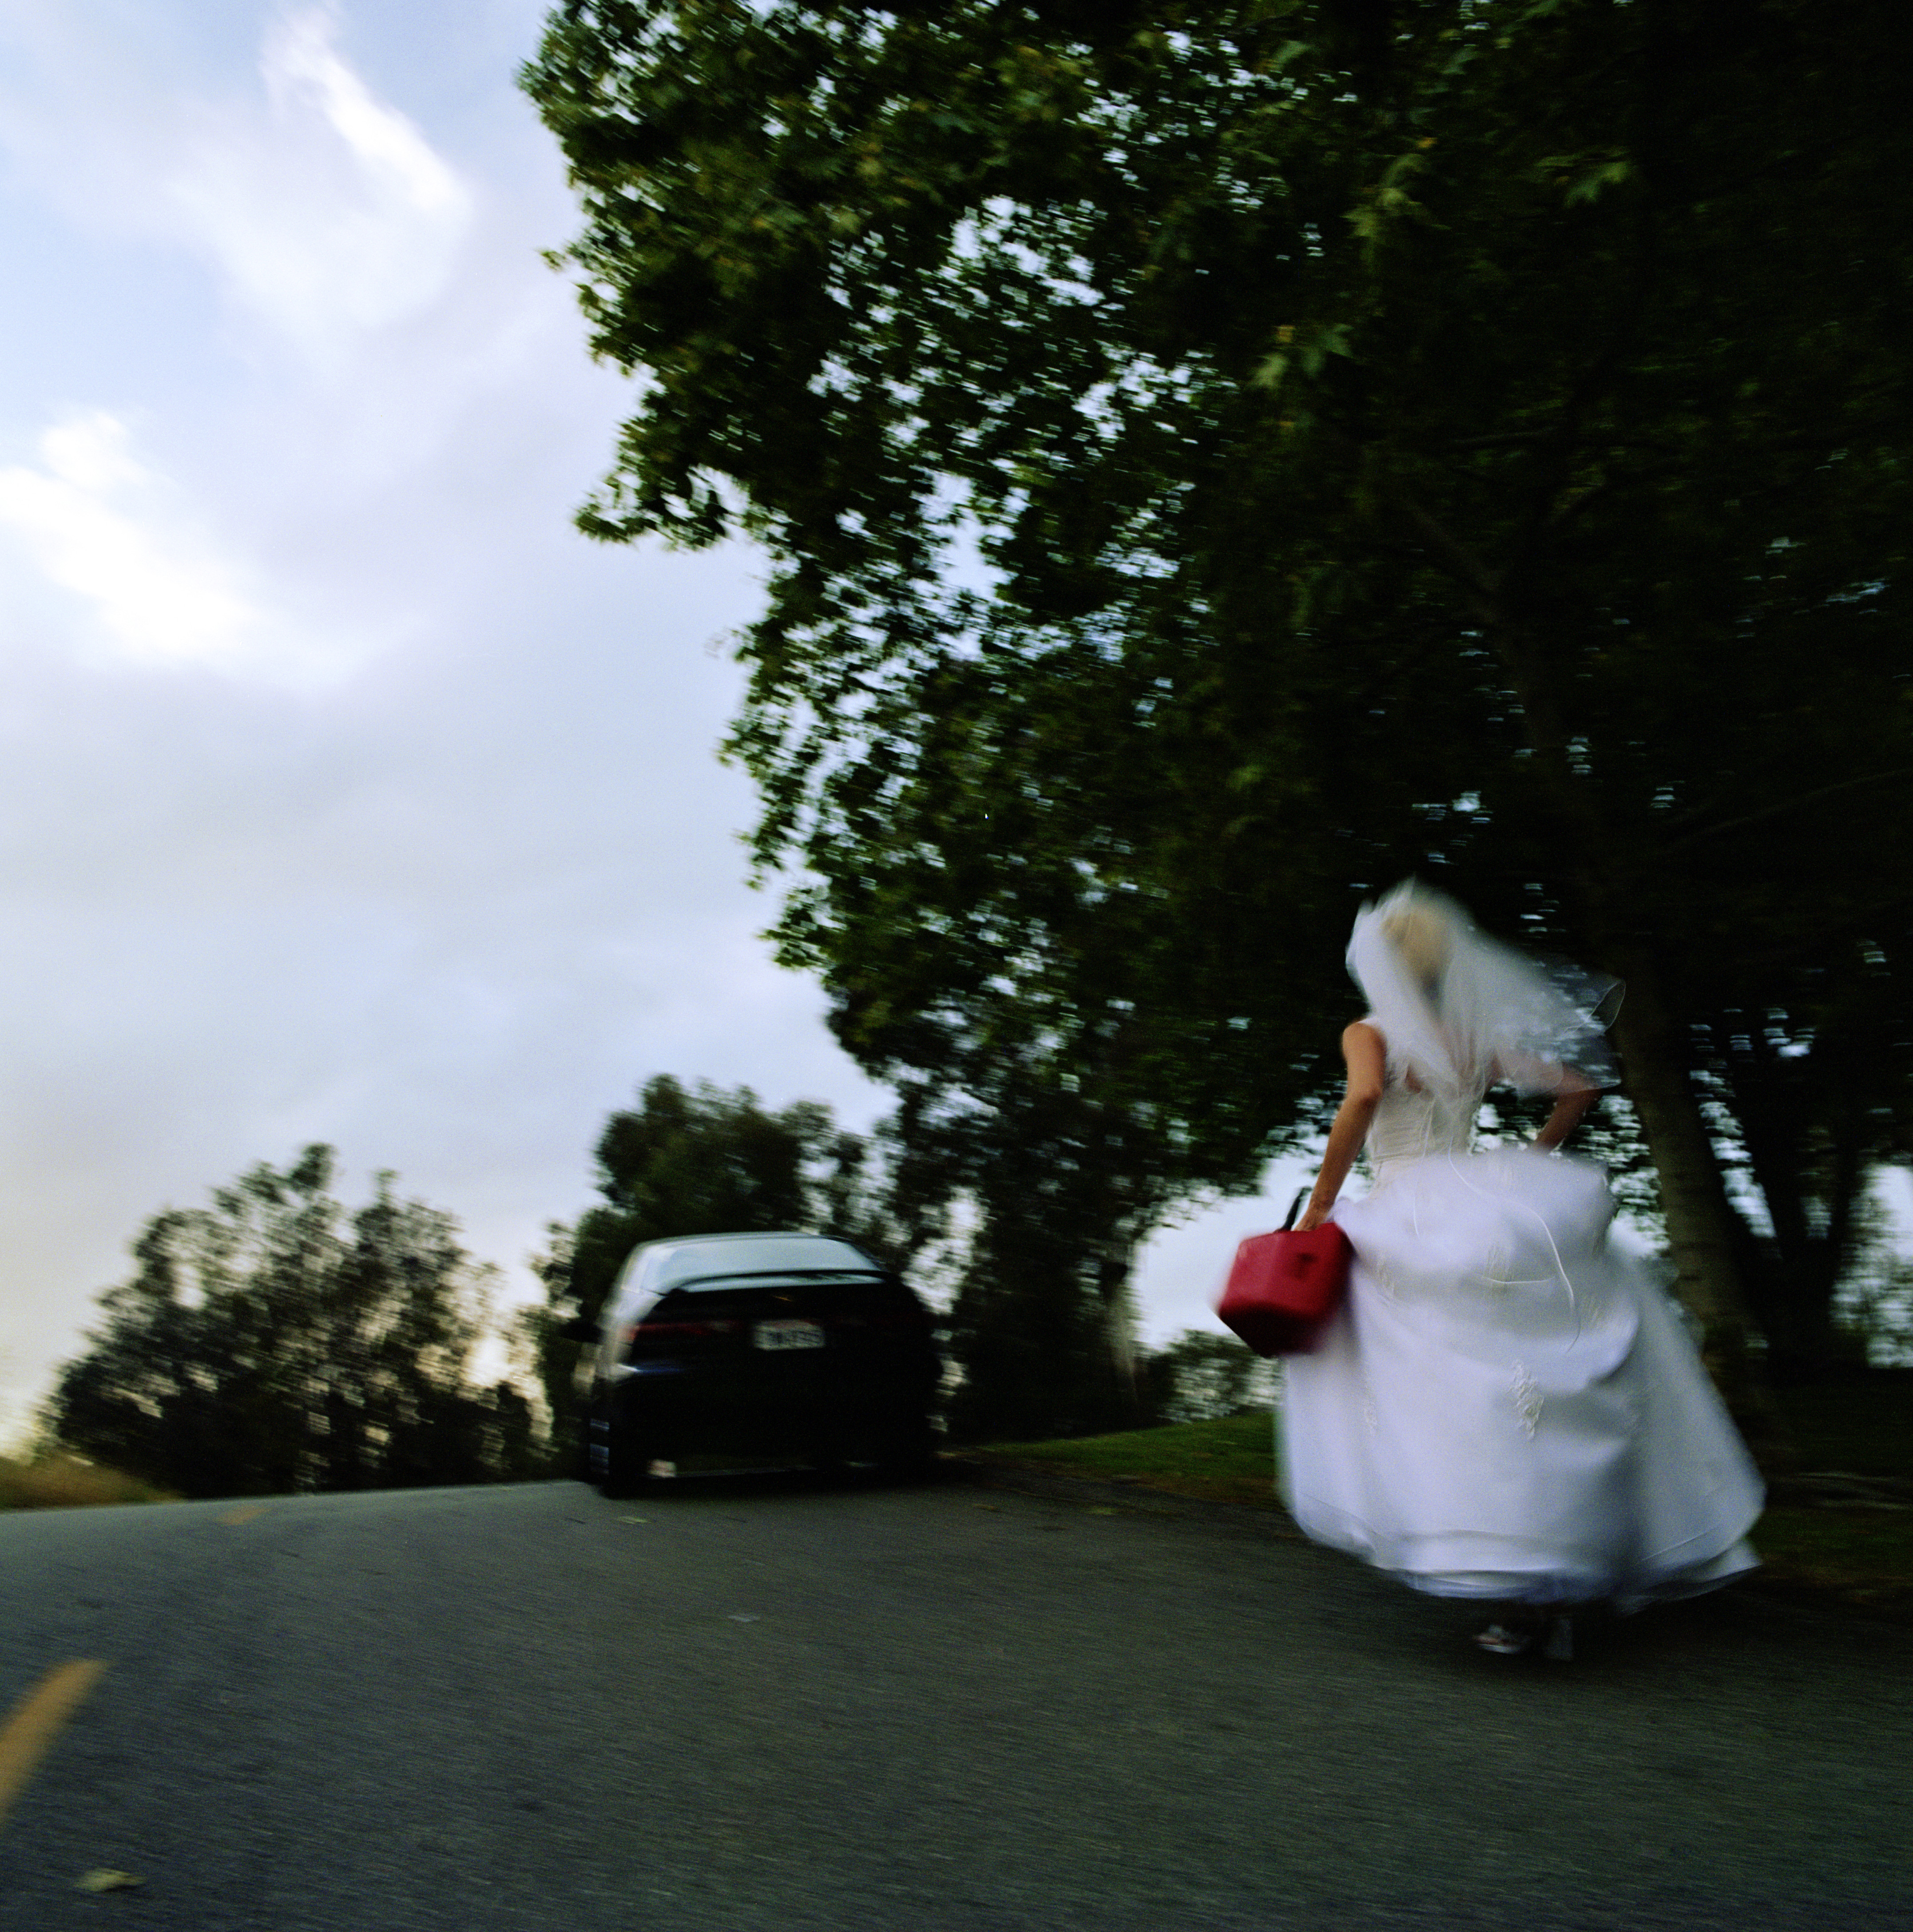 Uma noiva fugindo do casamento | Fonte: Getty Images